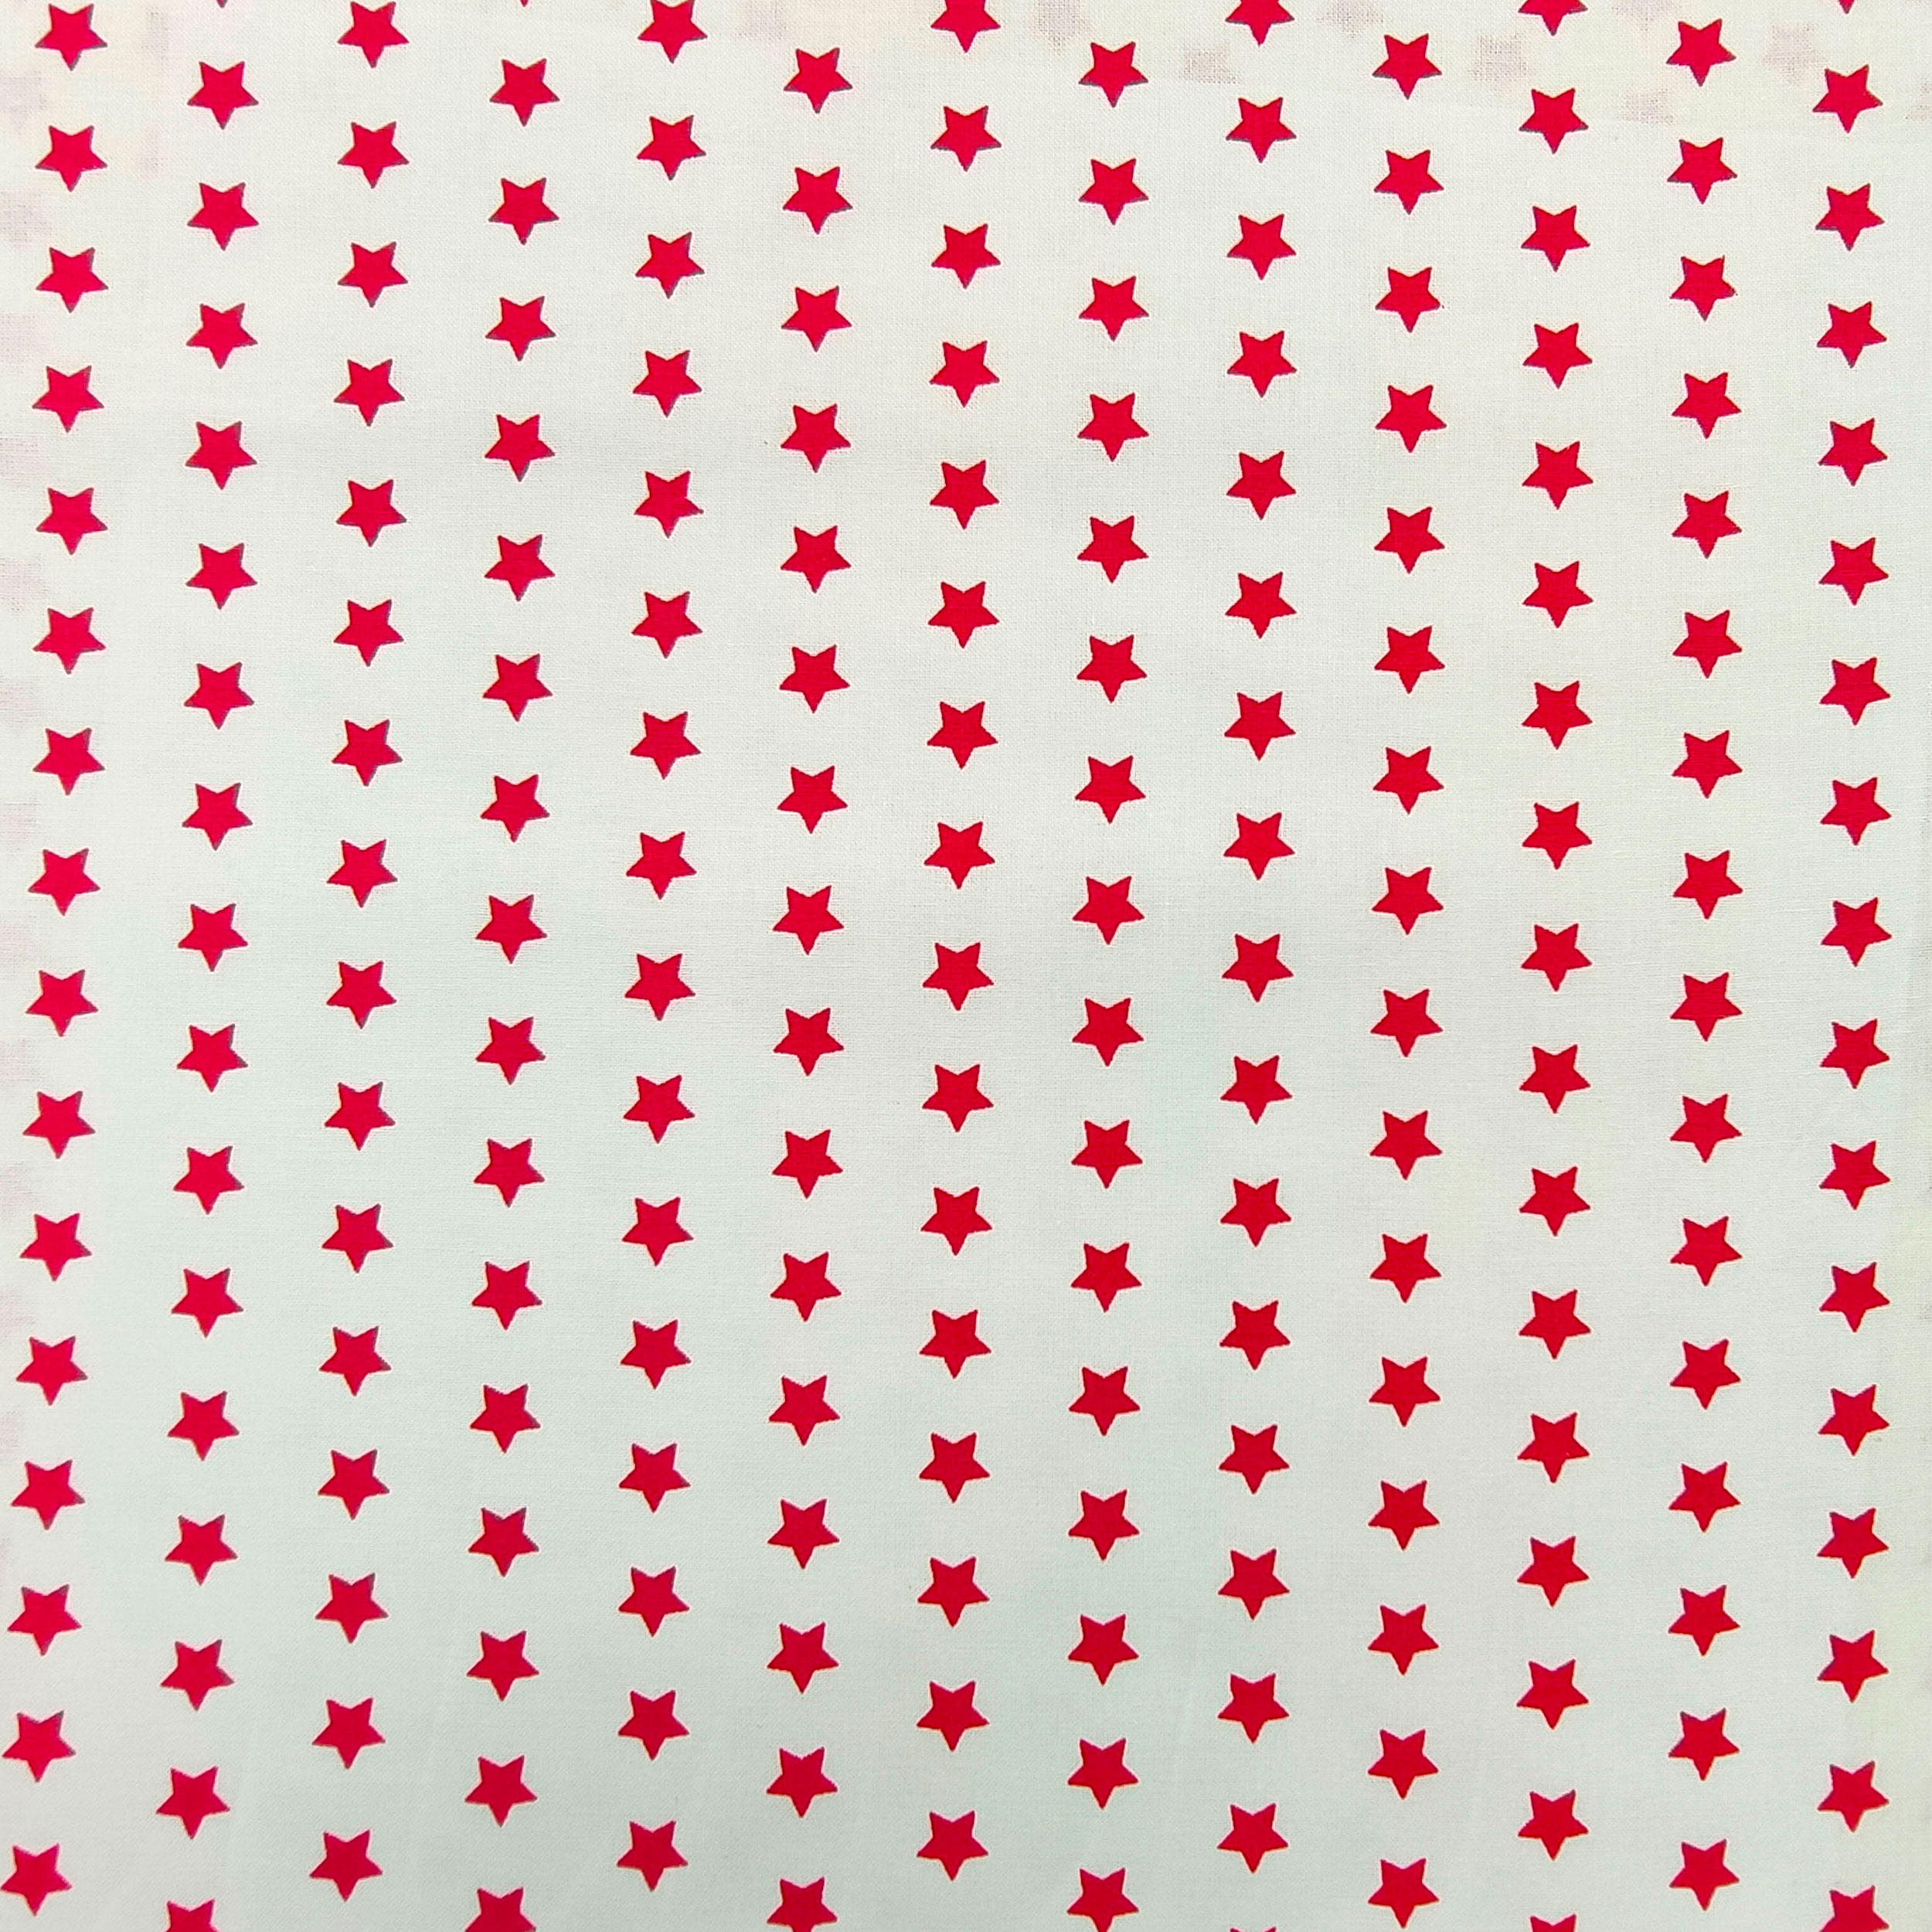 tessuto a stelle rosse con sfondo bianco